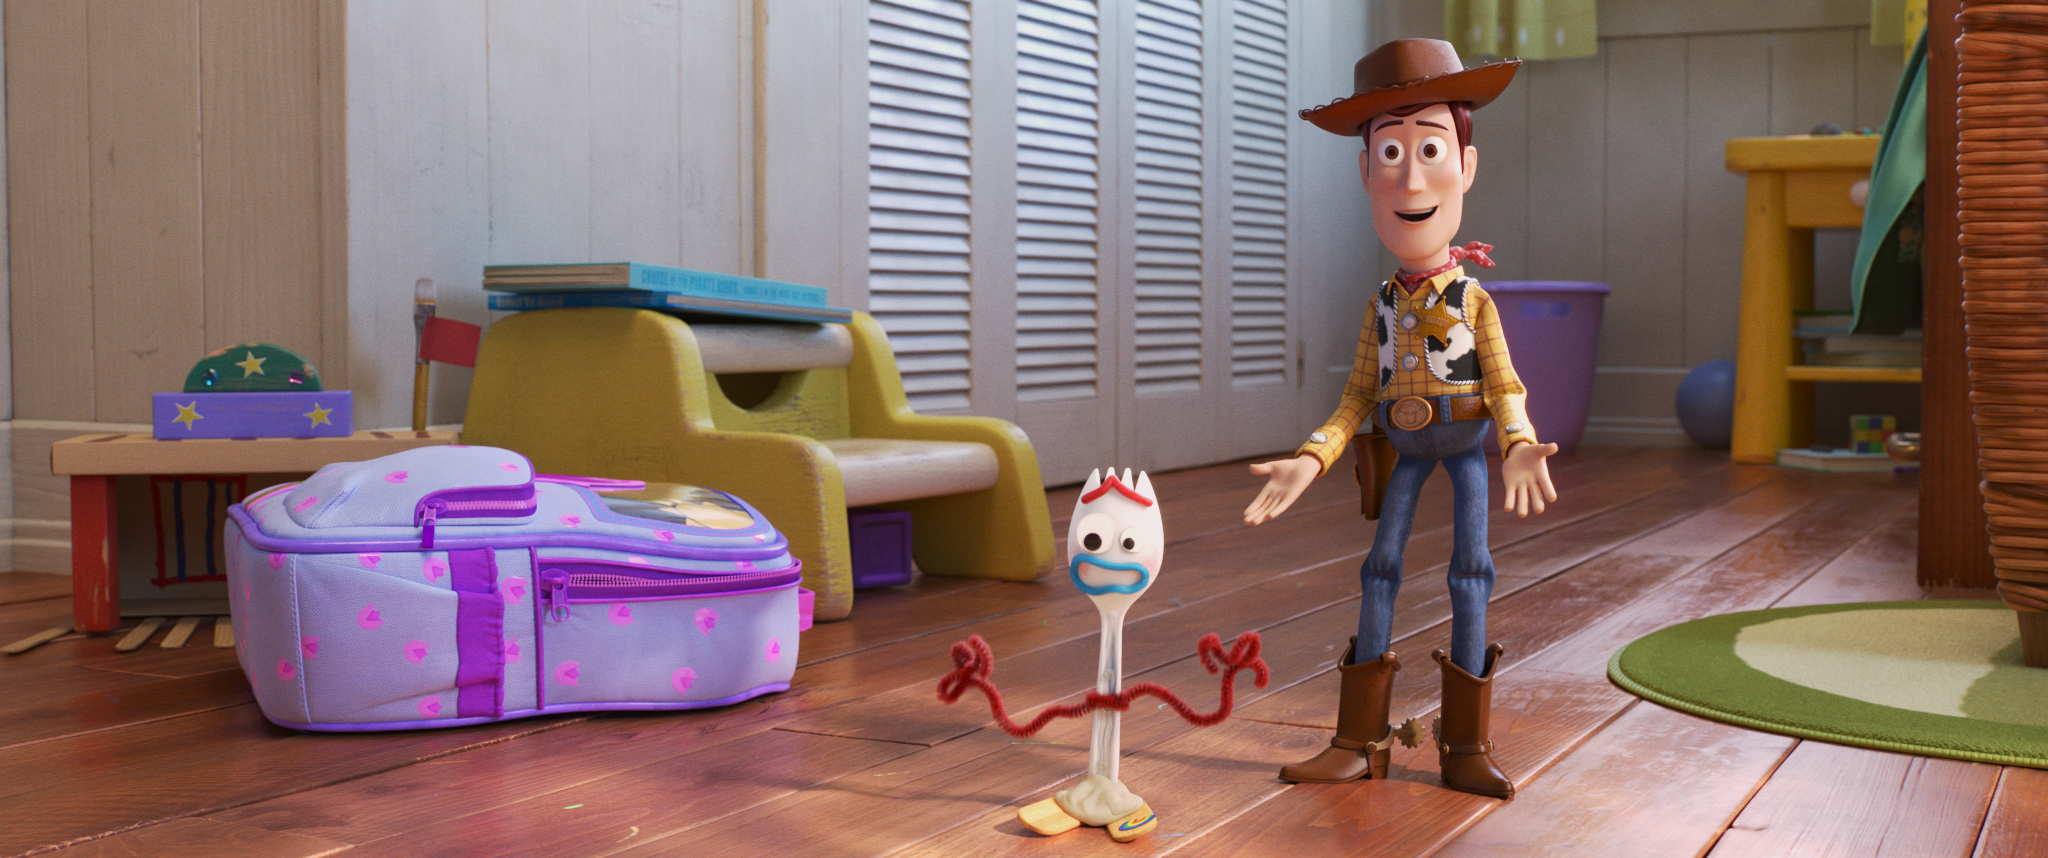 Foto de Toy Story 4 es la película animada más vista en Perú del 2019